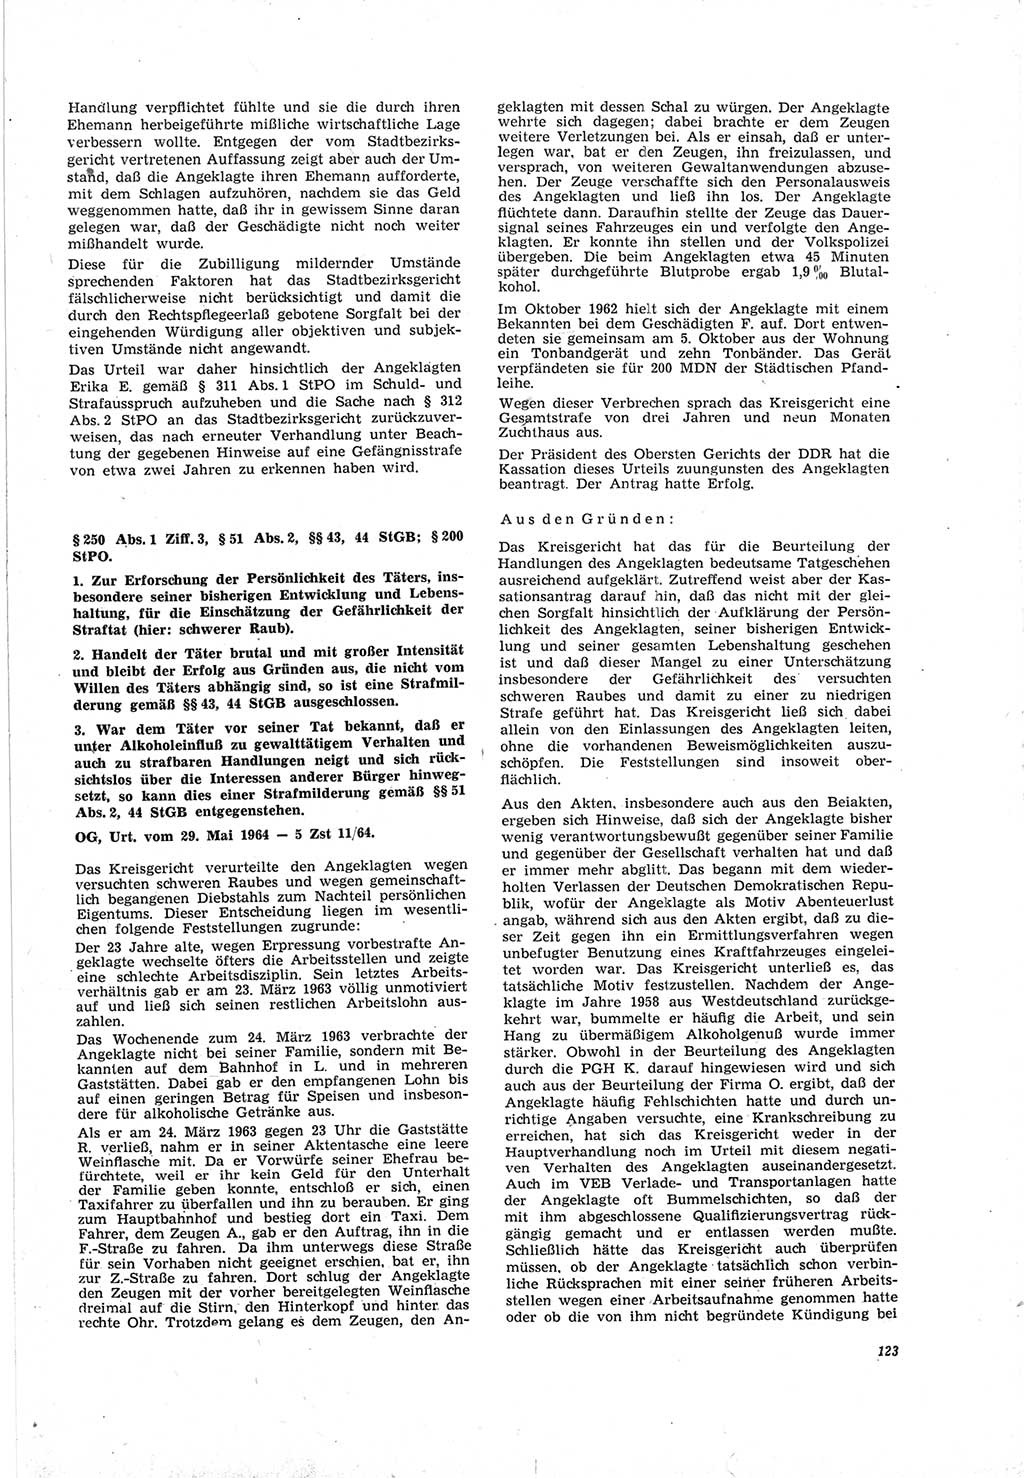 Neue Justiz (NJ), Zeitschrift für Recht und Rechtswissenschaft [Deutsche Demokratische Republik (DDR)], 19. Jahrgang 1965, Seite 123 (NJ DDR 1965, S. 123)